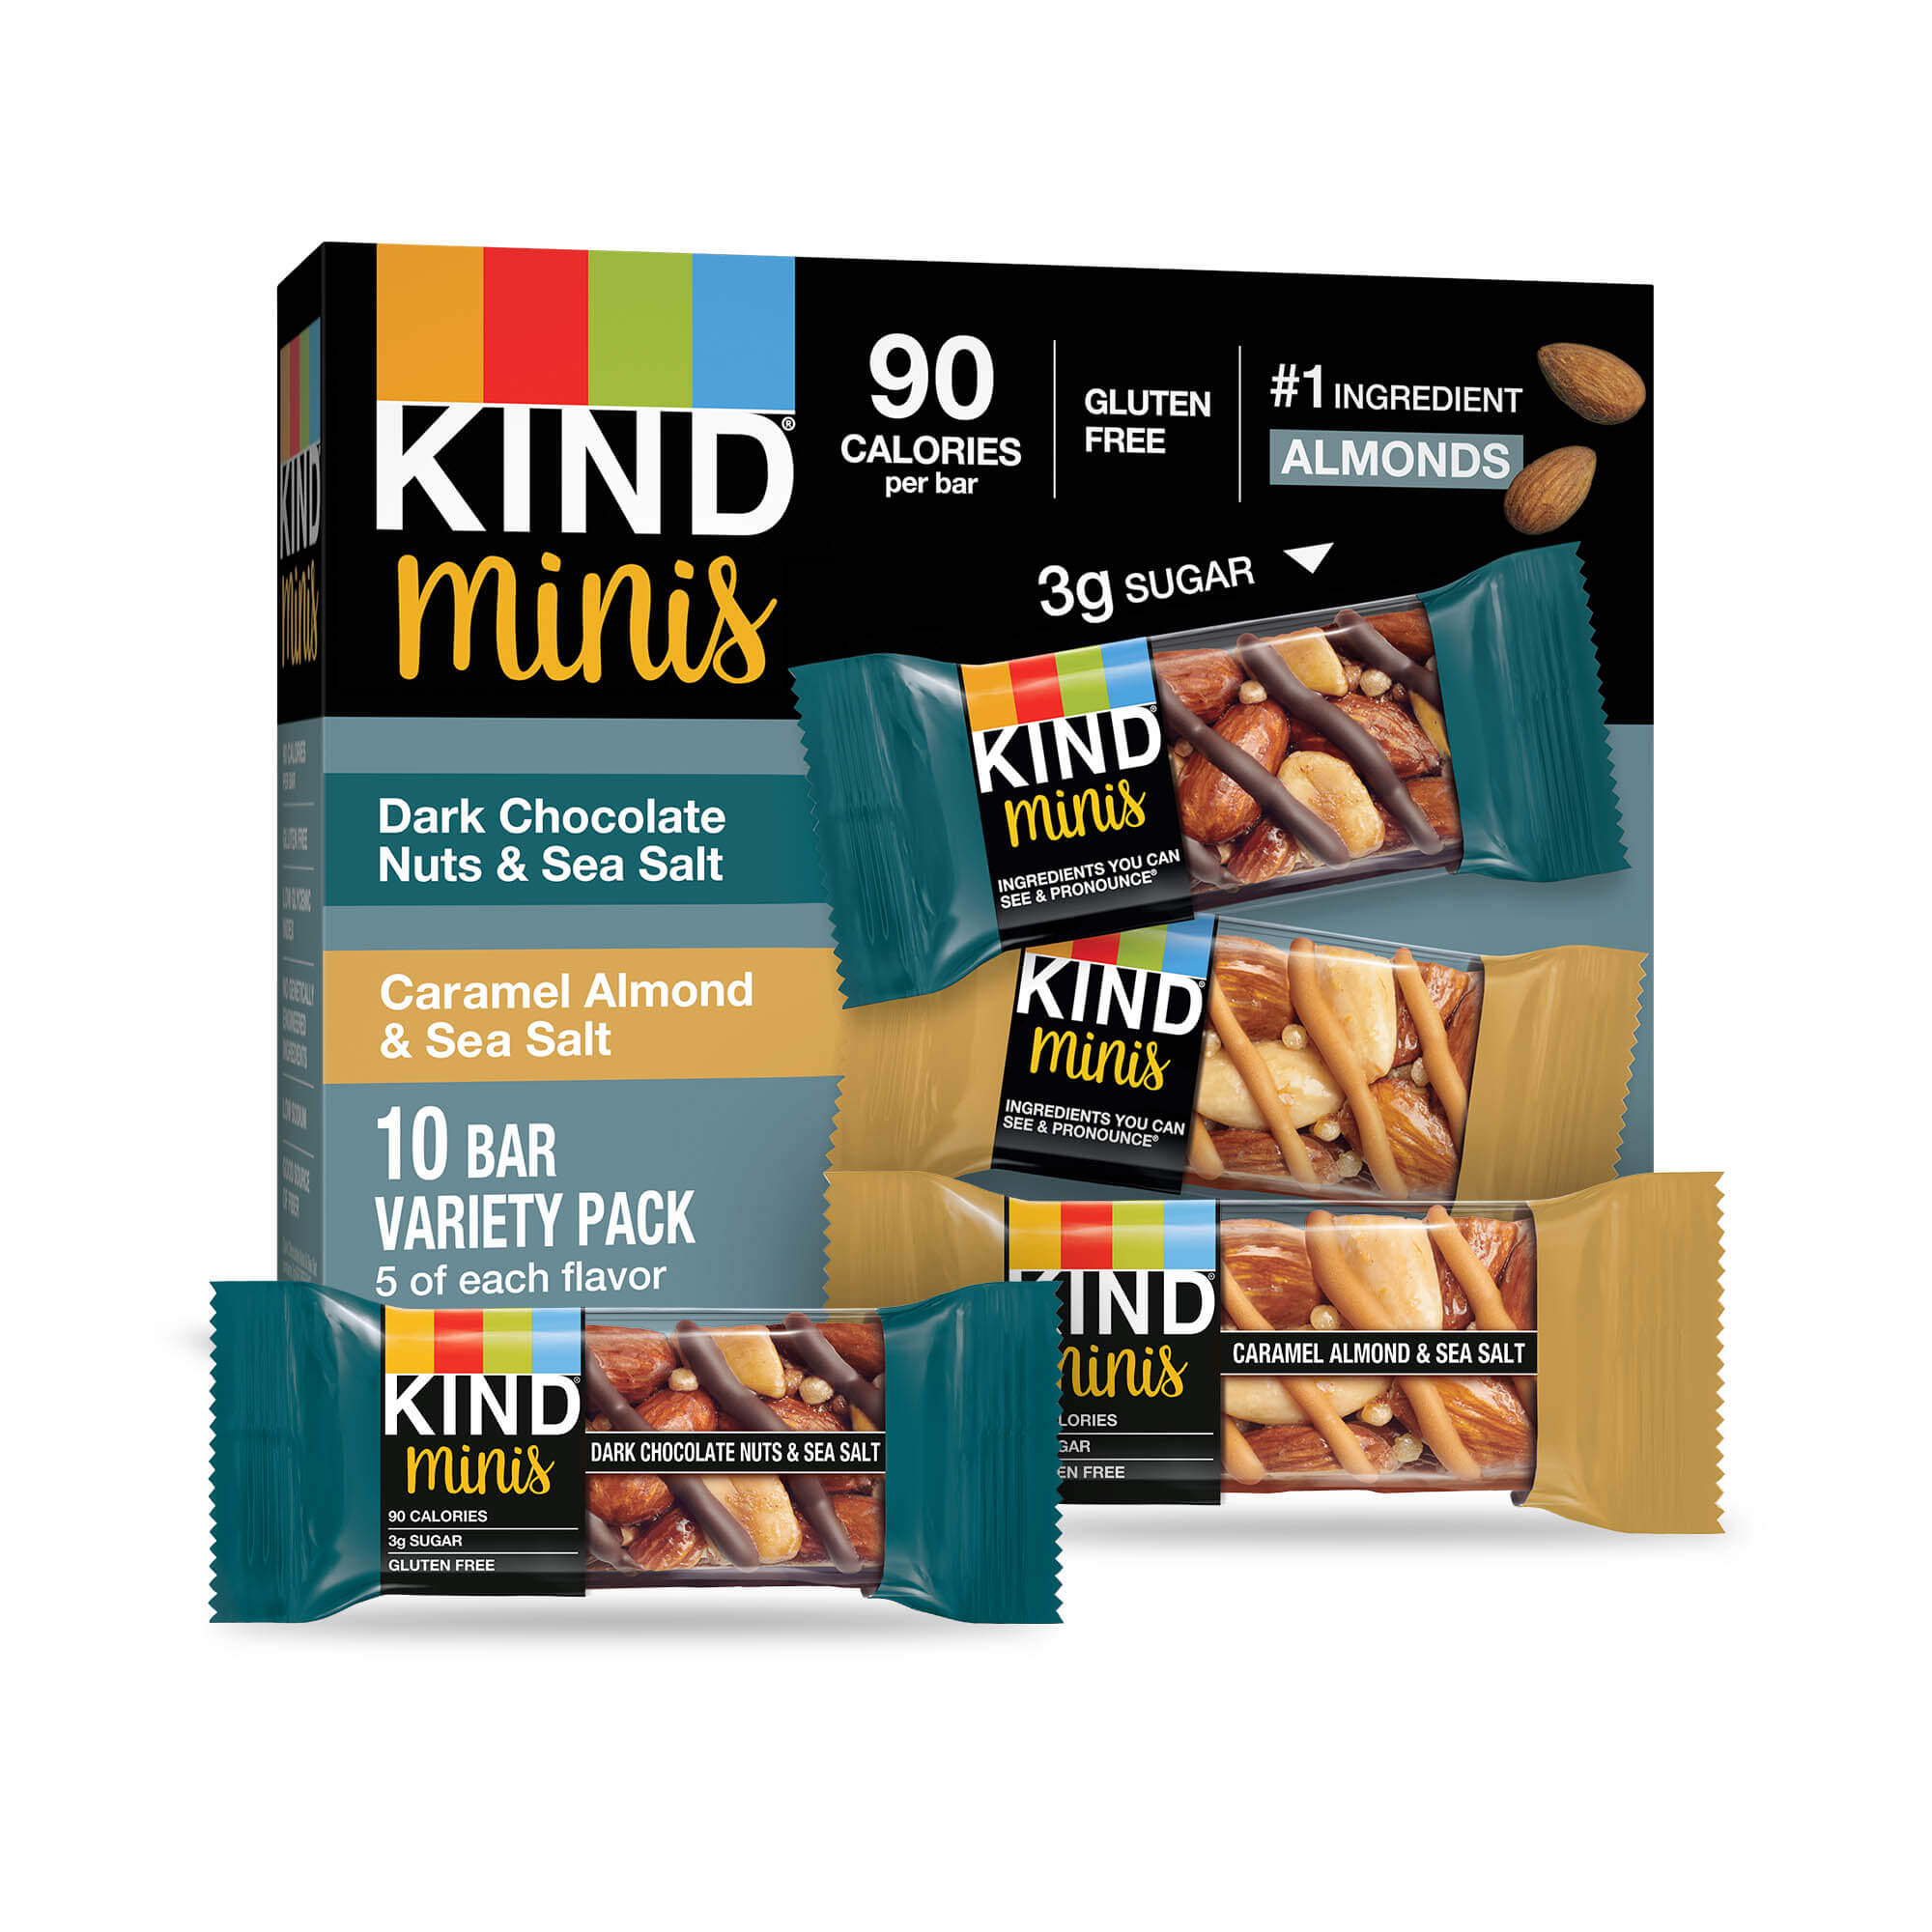 Kind® Minis - Dark Chocolate Nuts & Sea Salt and Caramel Almond & Sea Salt